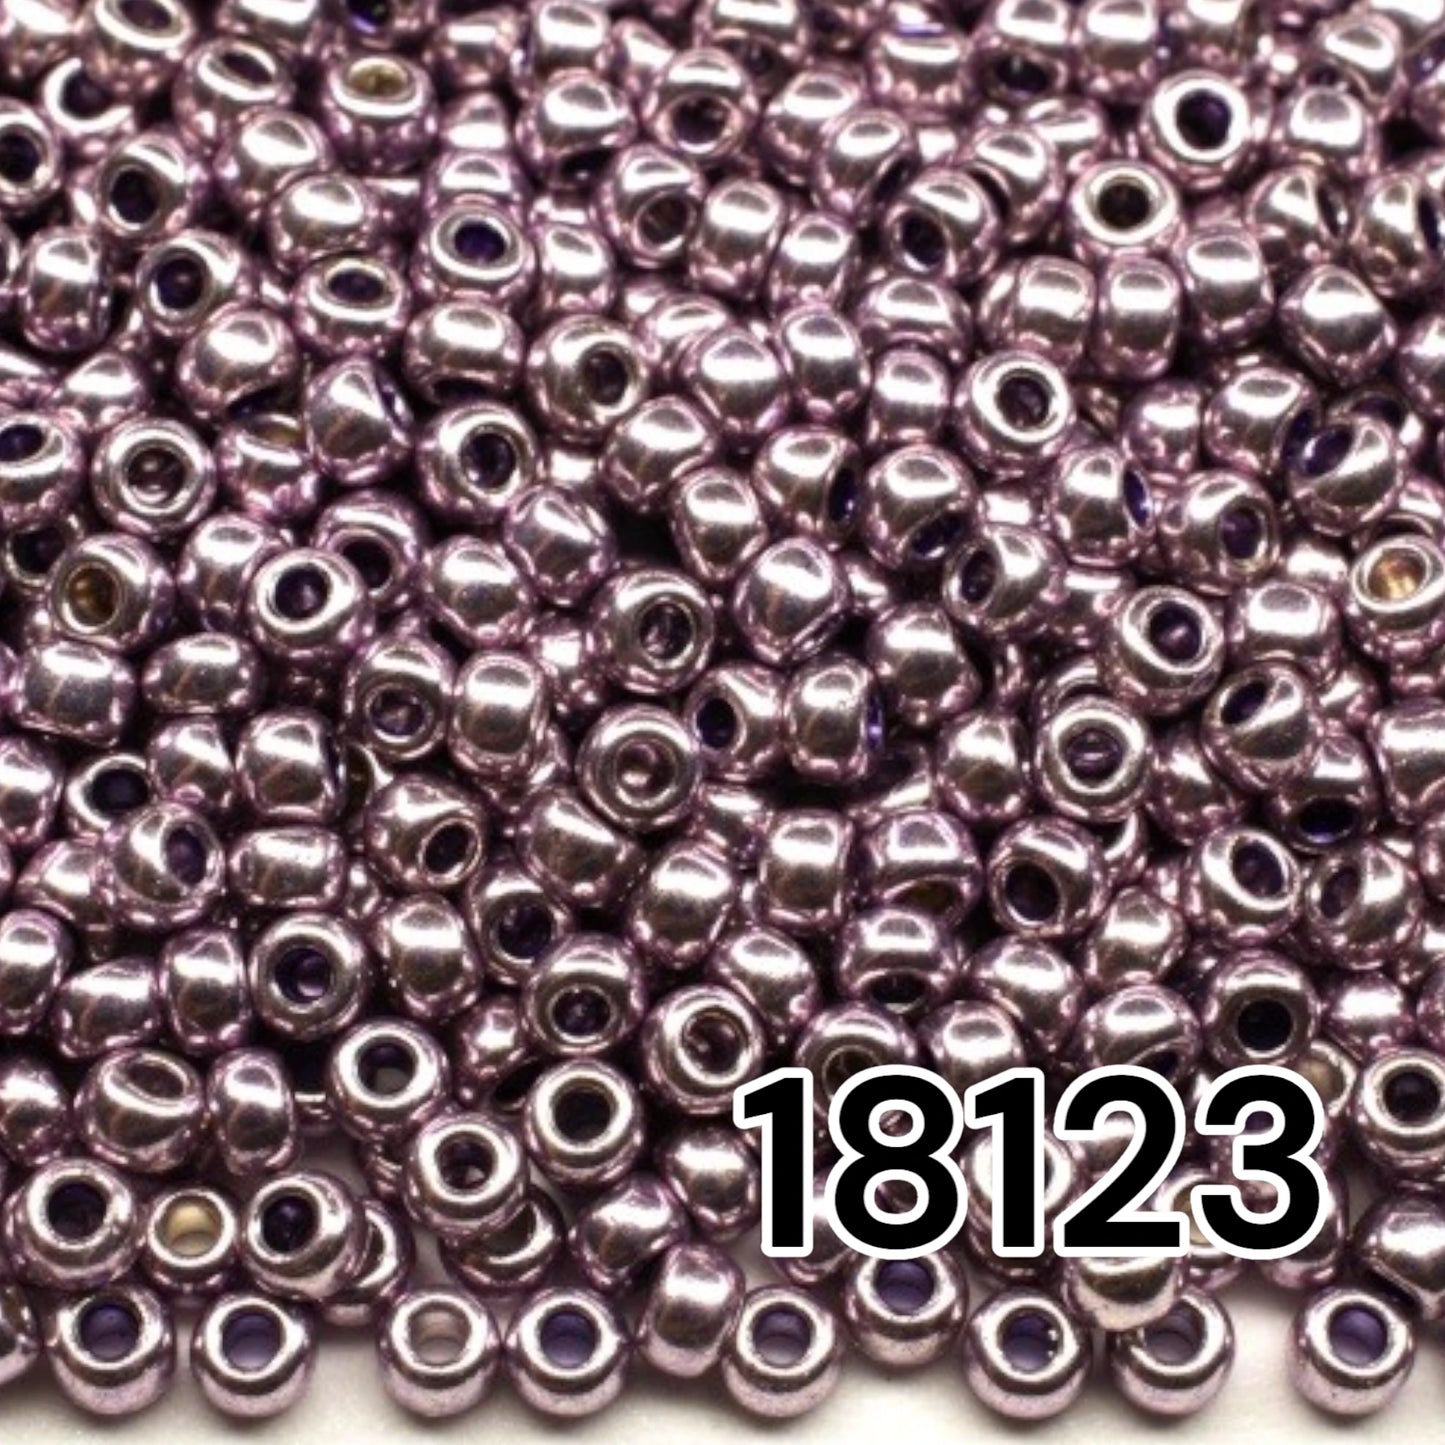 18123 Tschechische Rocailles PRECIOSA rund 10/0 Flieder metallic. Metallisch - Solgel.